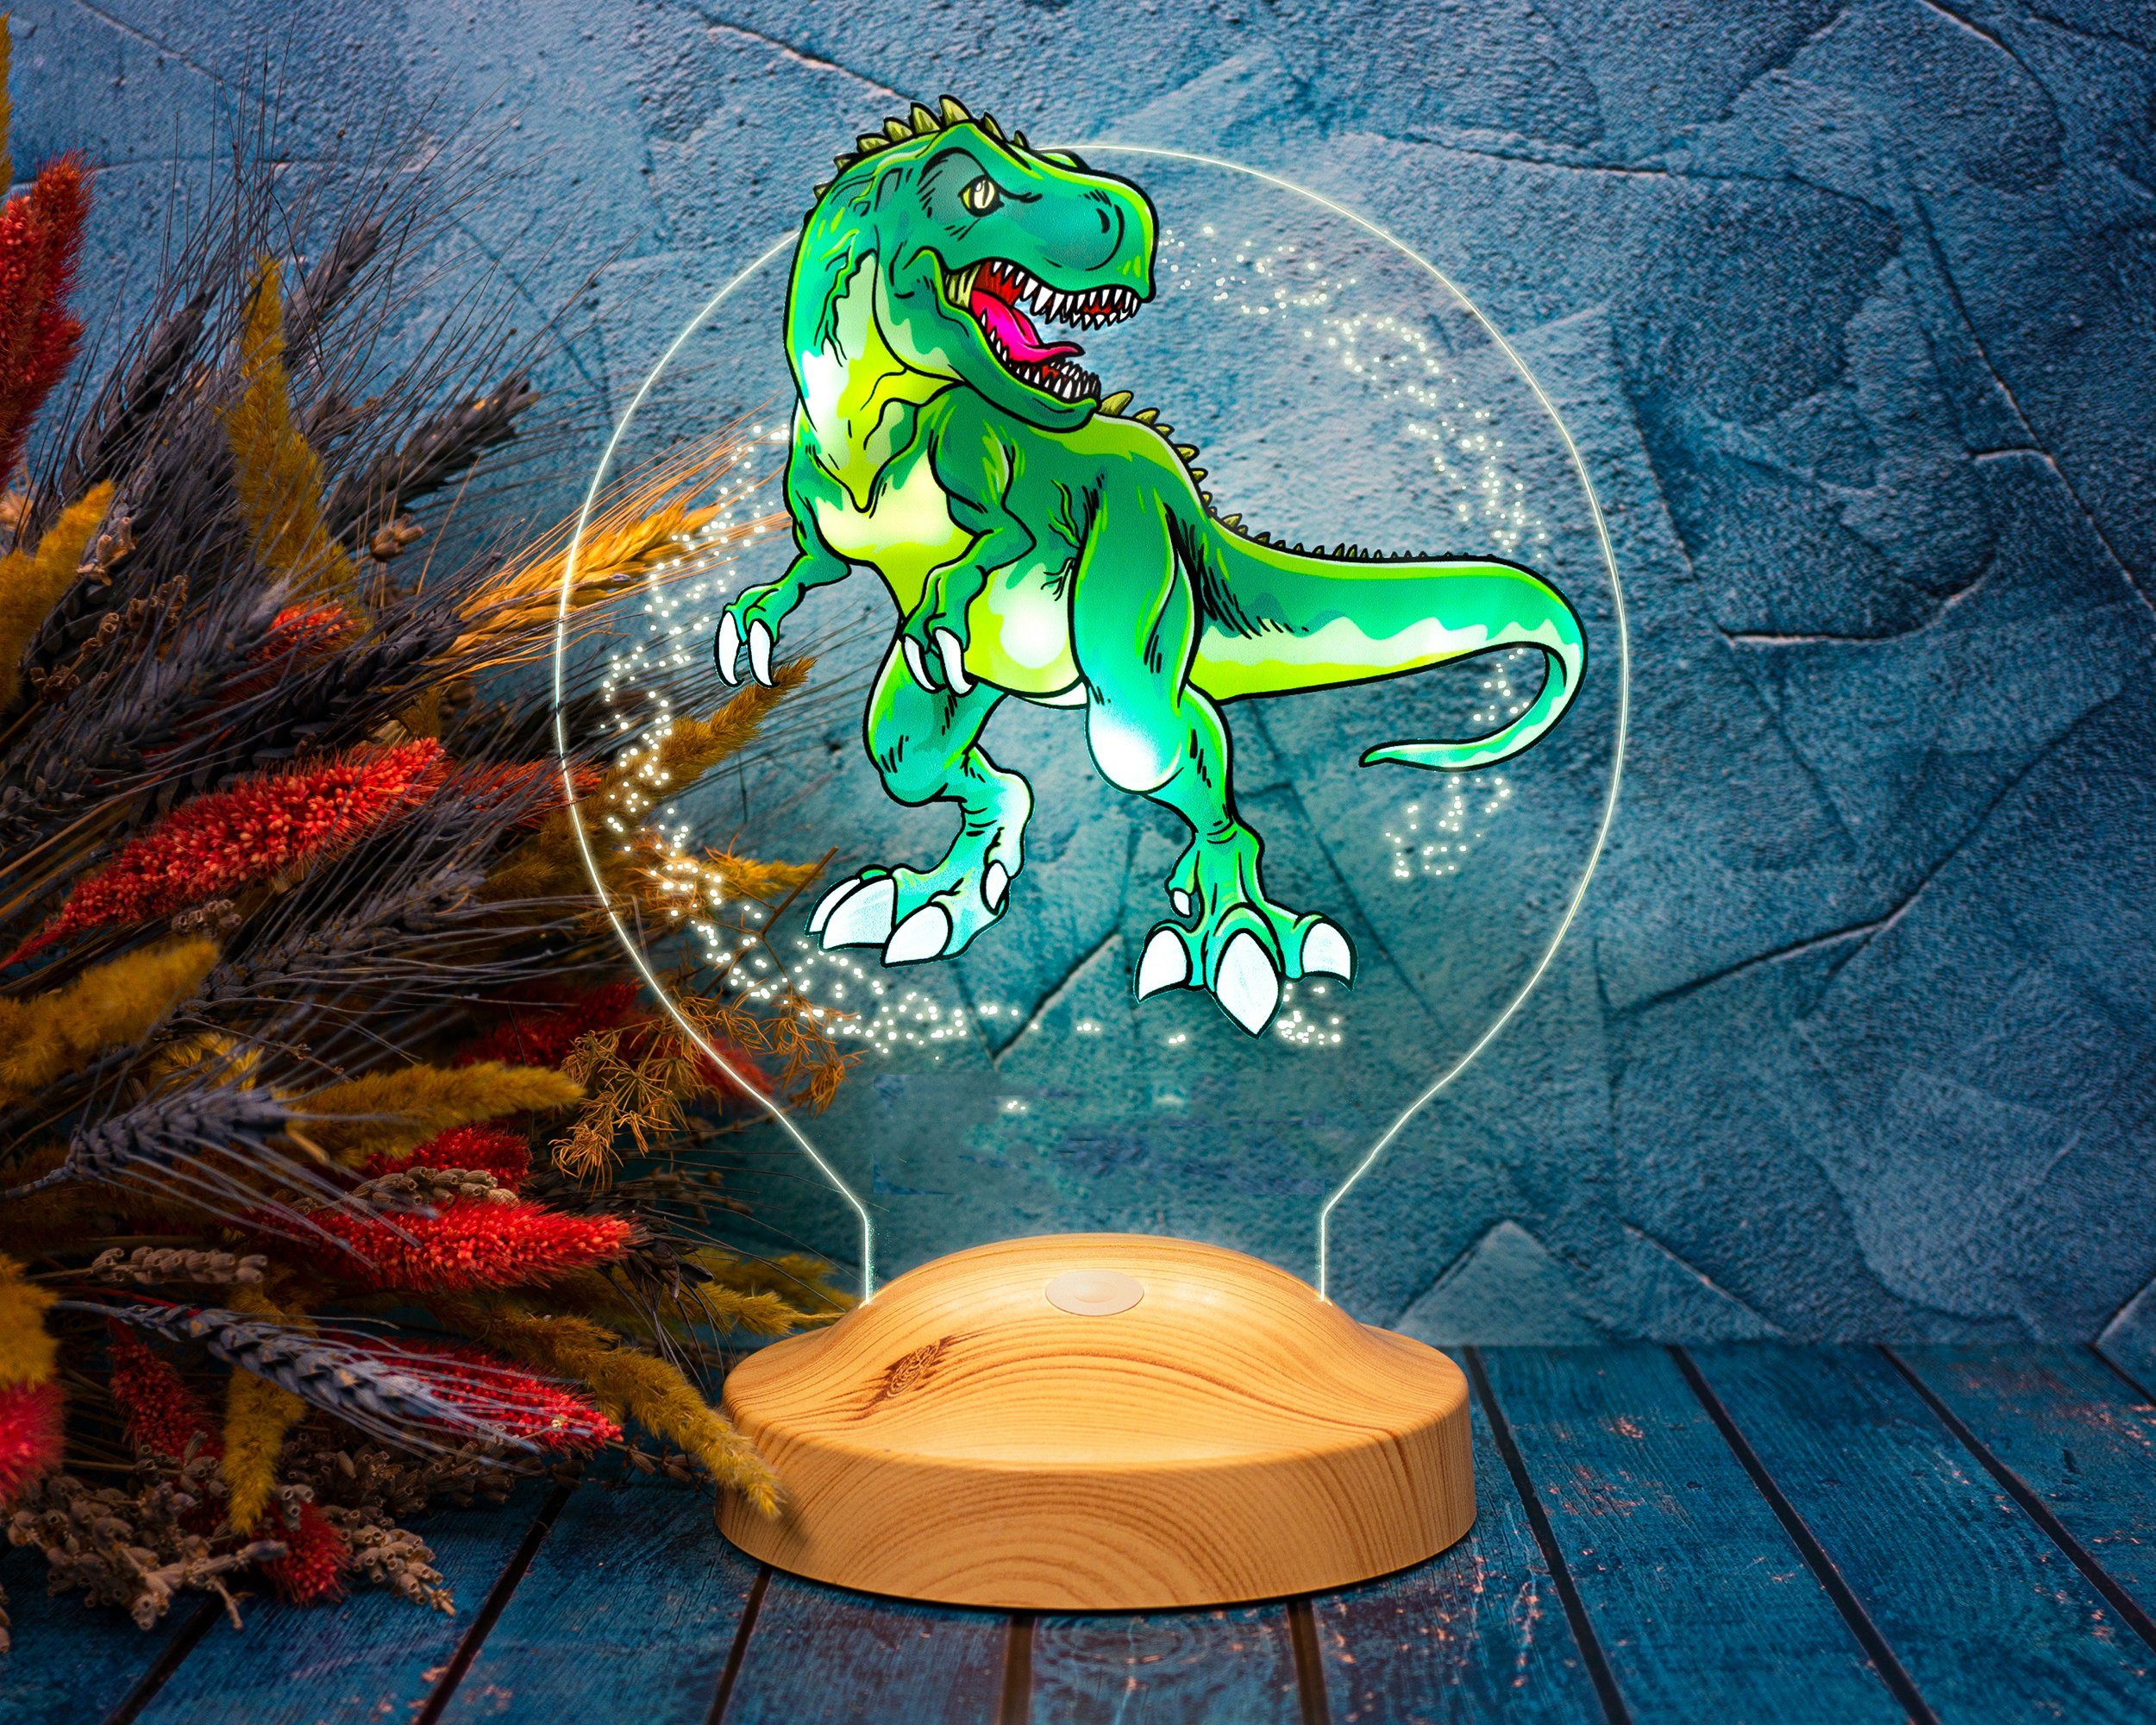 fest UV-Druck für Farben Nachtlicht Geschenkelampe LED Nachttischlampe Dinosaurier Dino-Fans, 6 mit T-REX LED Lampe integriert,